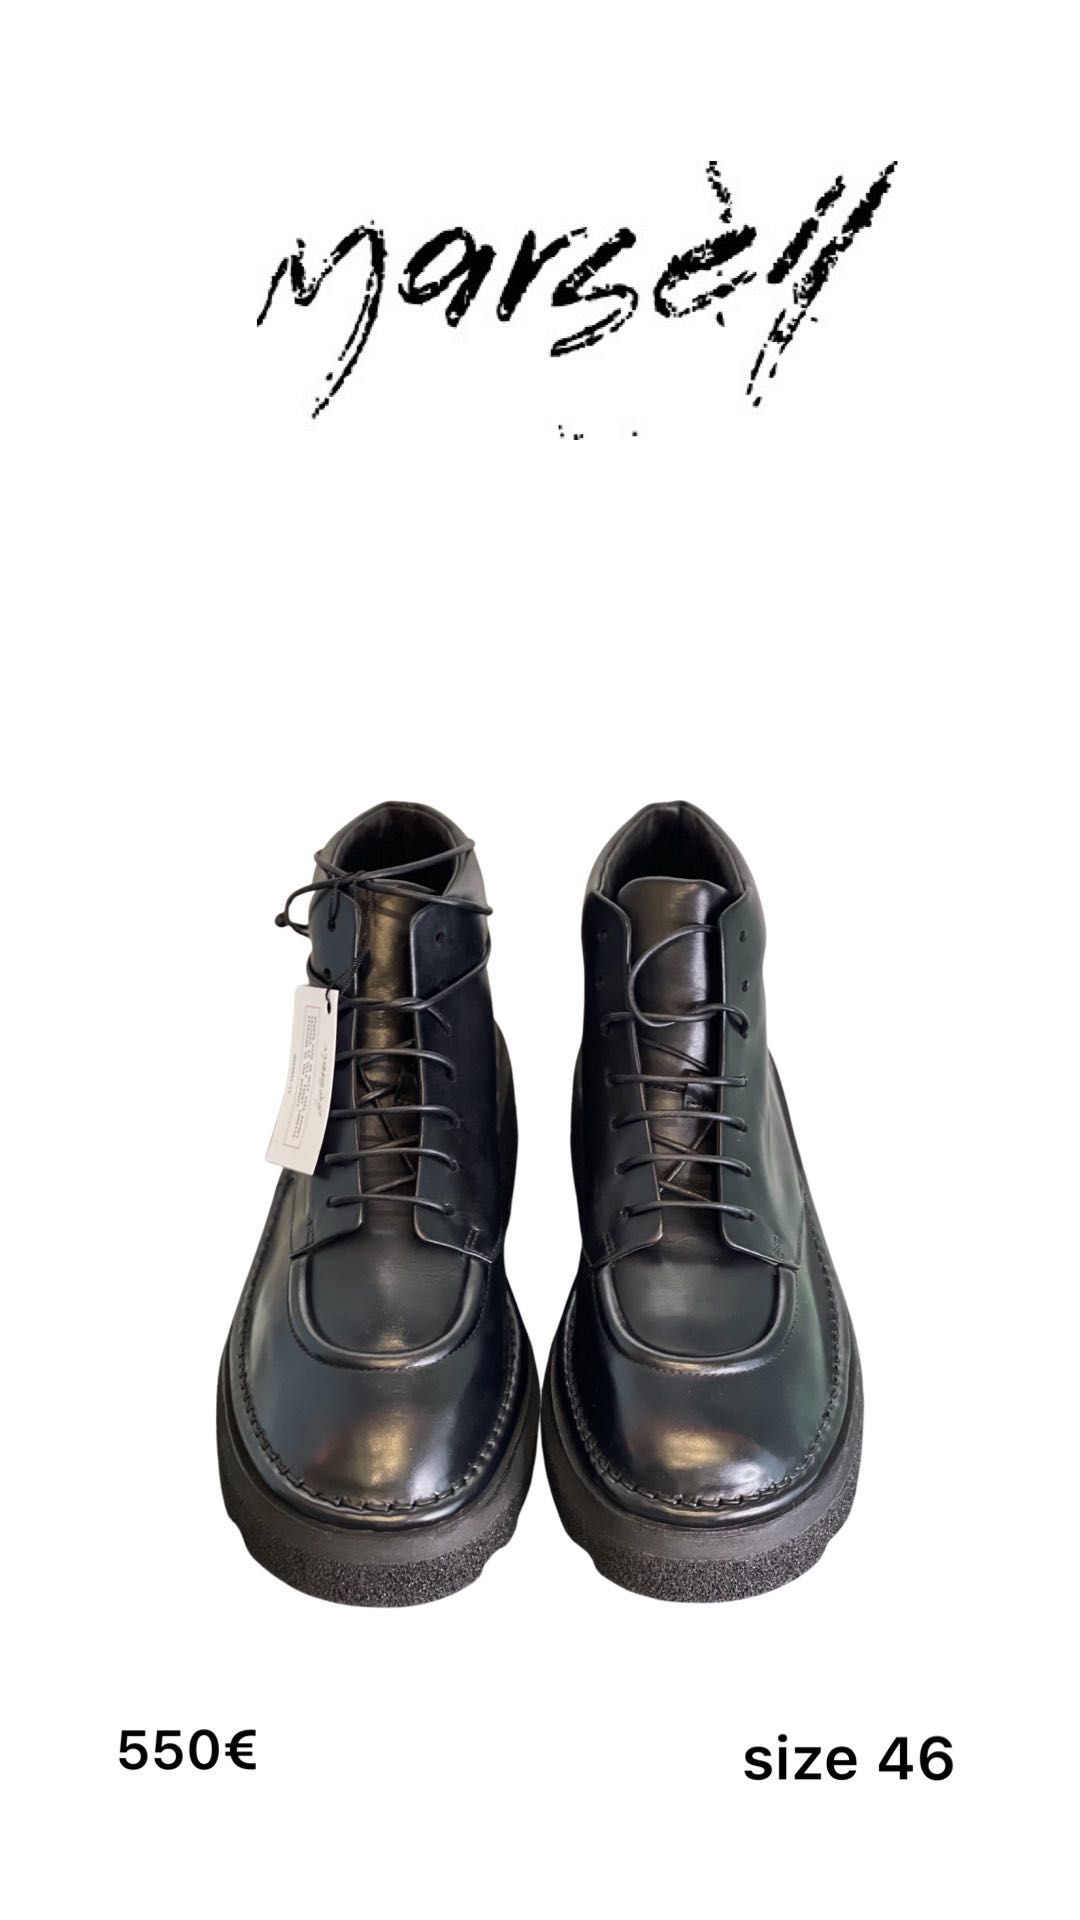 Продам чоловічі чоботи від італійського бренду Marsell (оригінал)